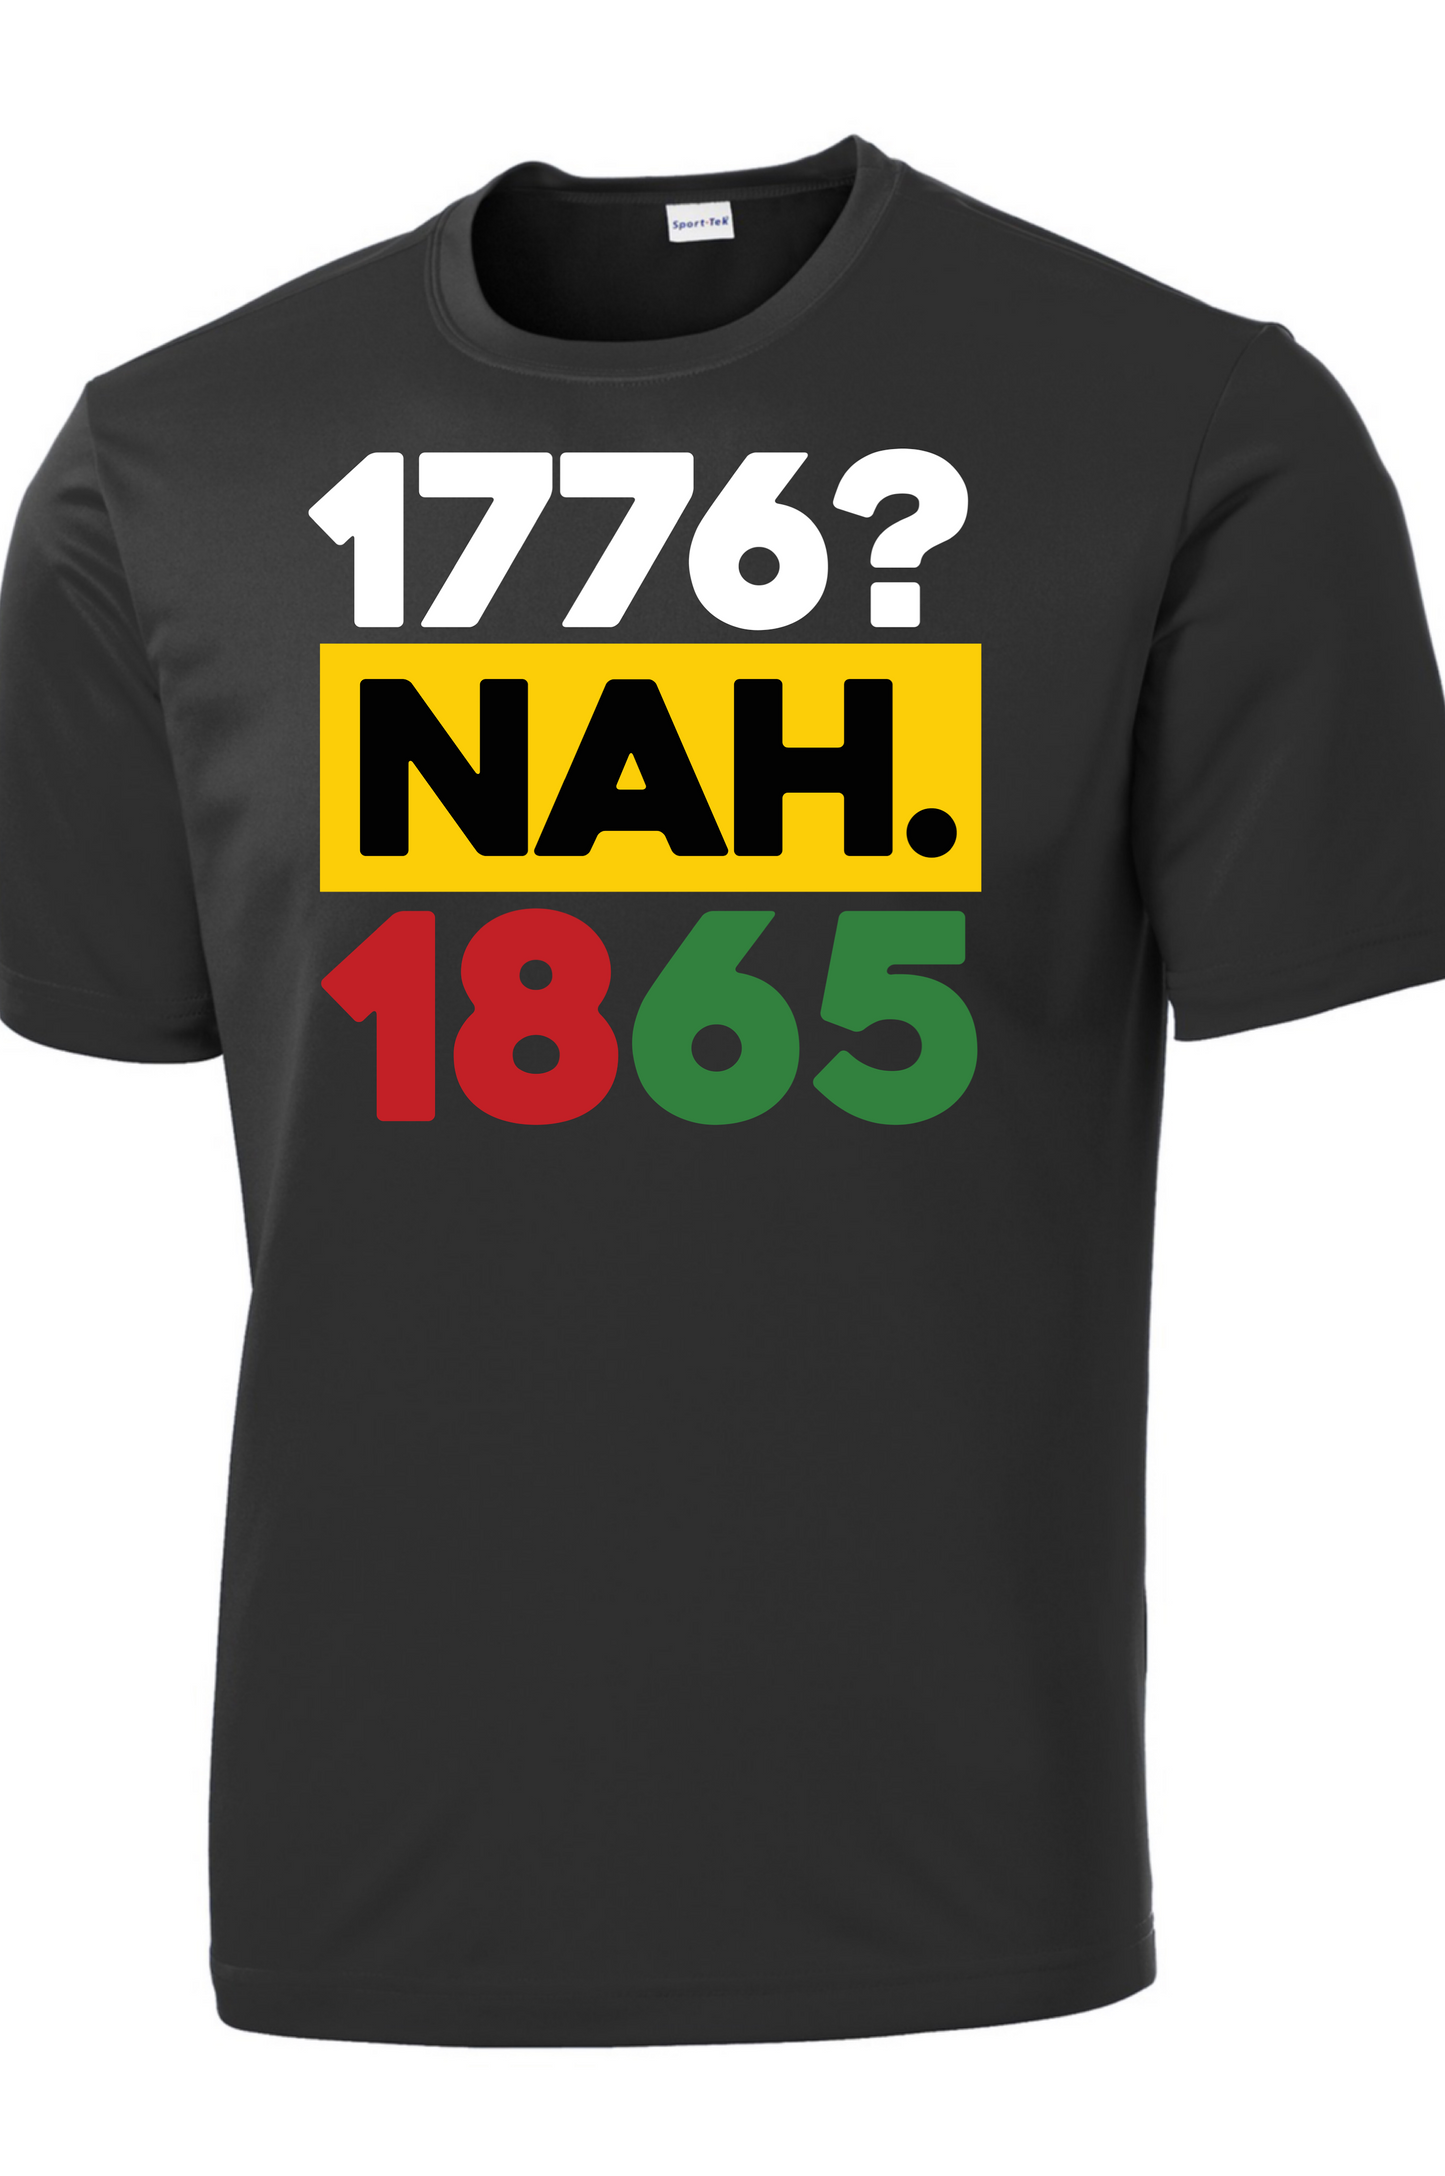 Men’s 1776 Nah 1865  T-Shirt